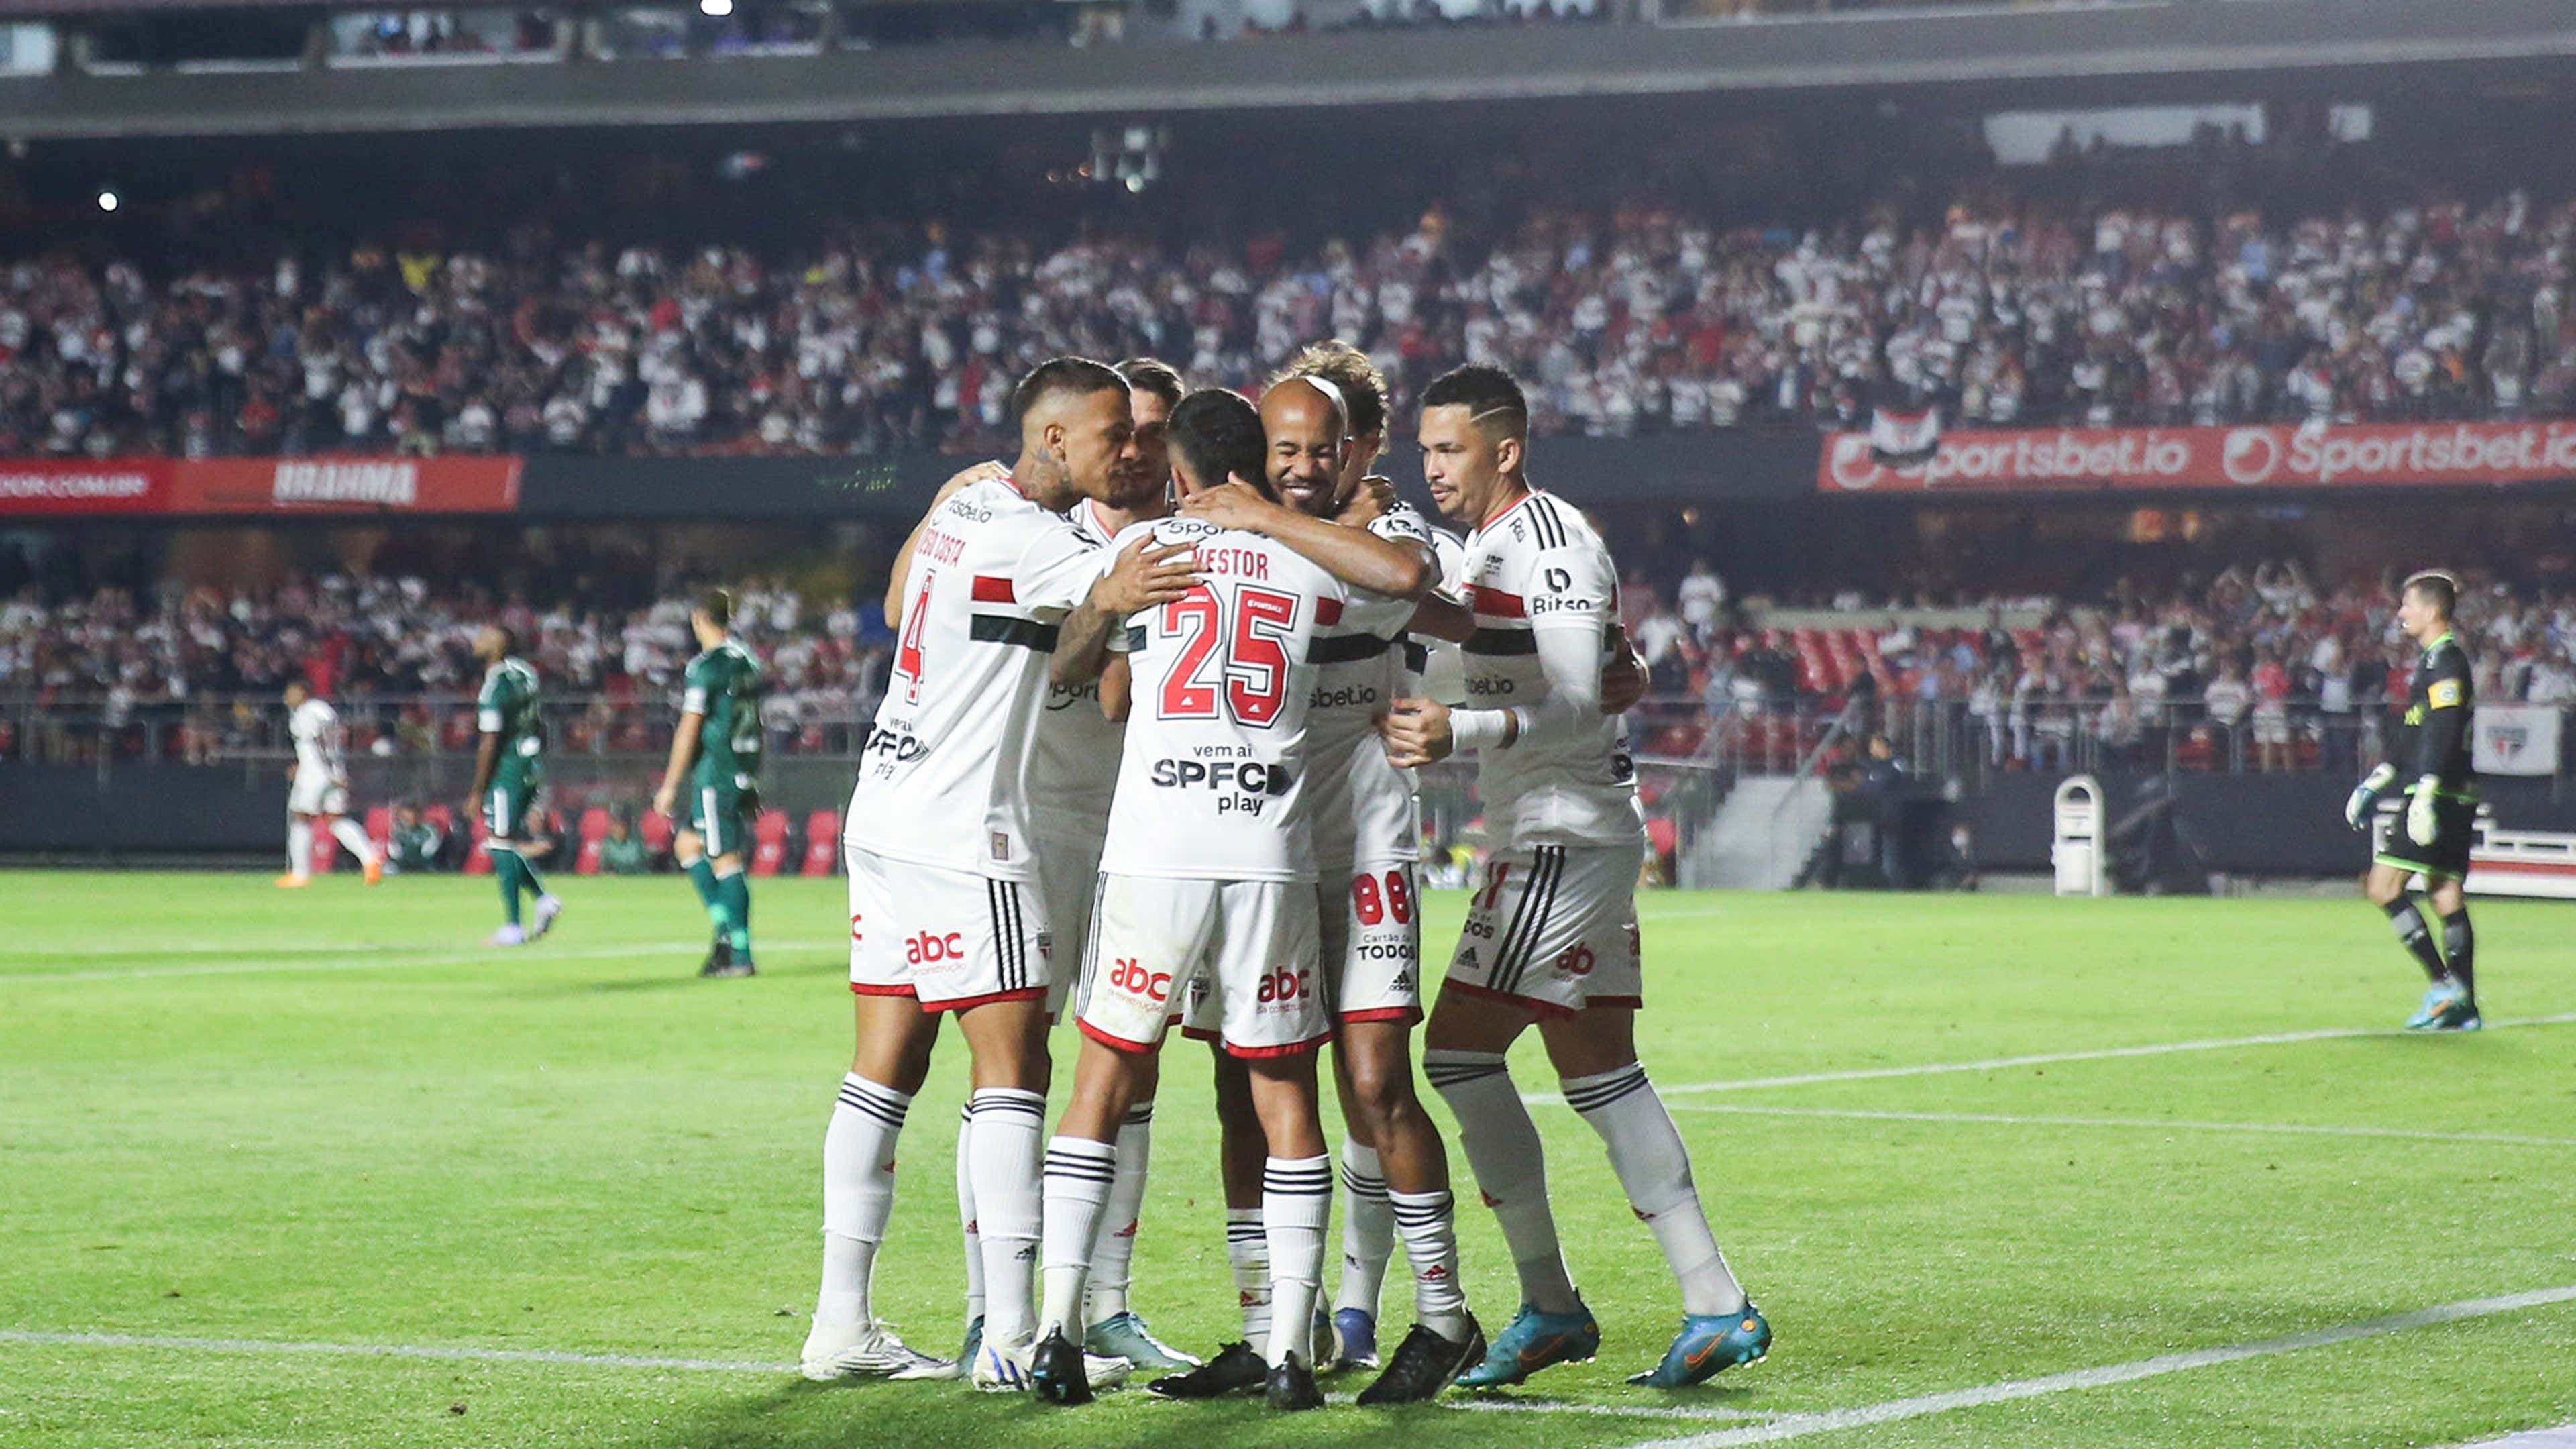 São Paulo x Flamengo: como assistir AO VIVO e de GRAÇA na !